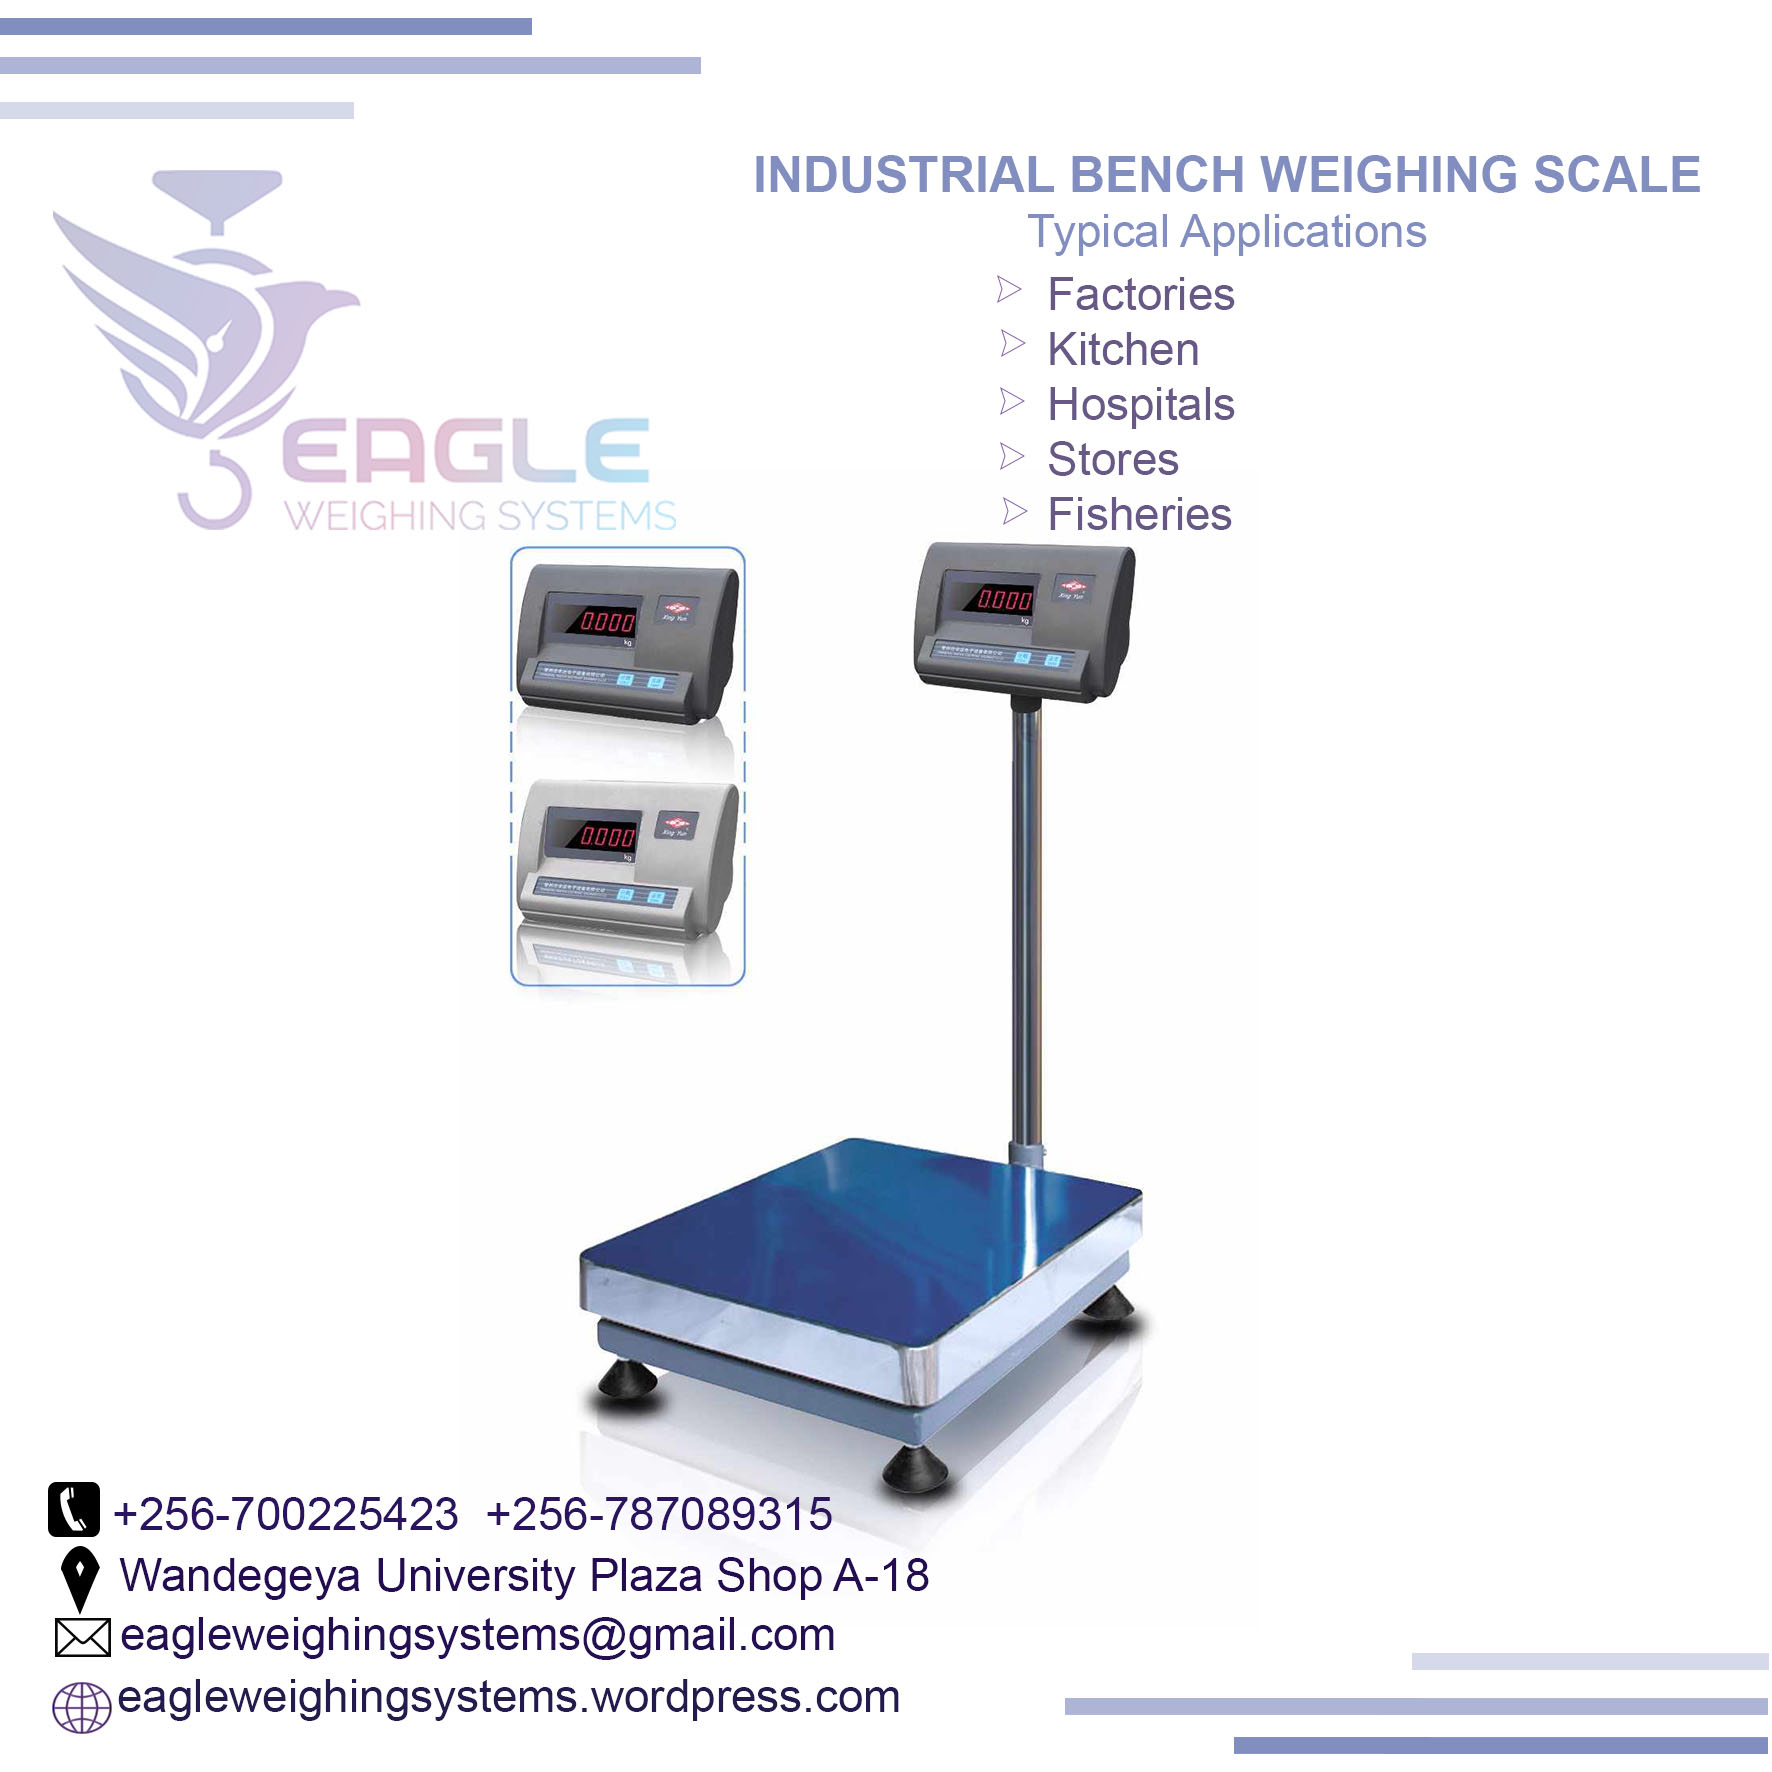 100 kg digital weighing scales in Kampala Uganda - Pundas marketplace ...